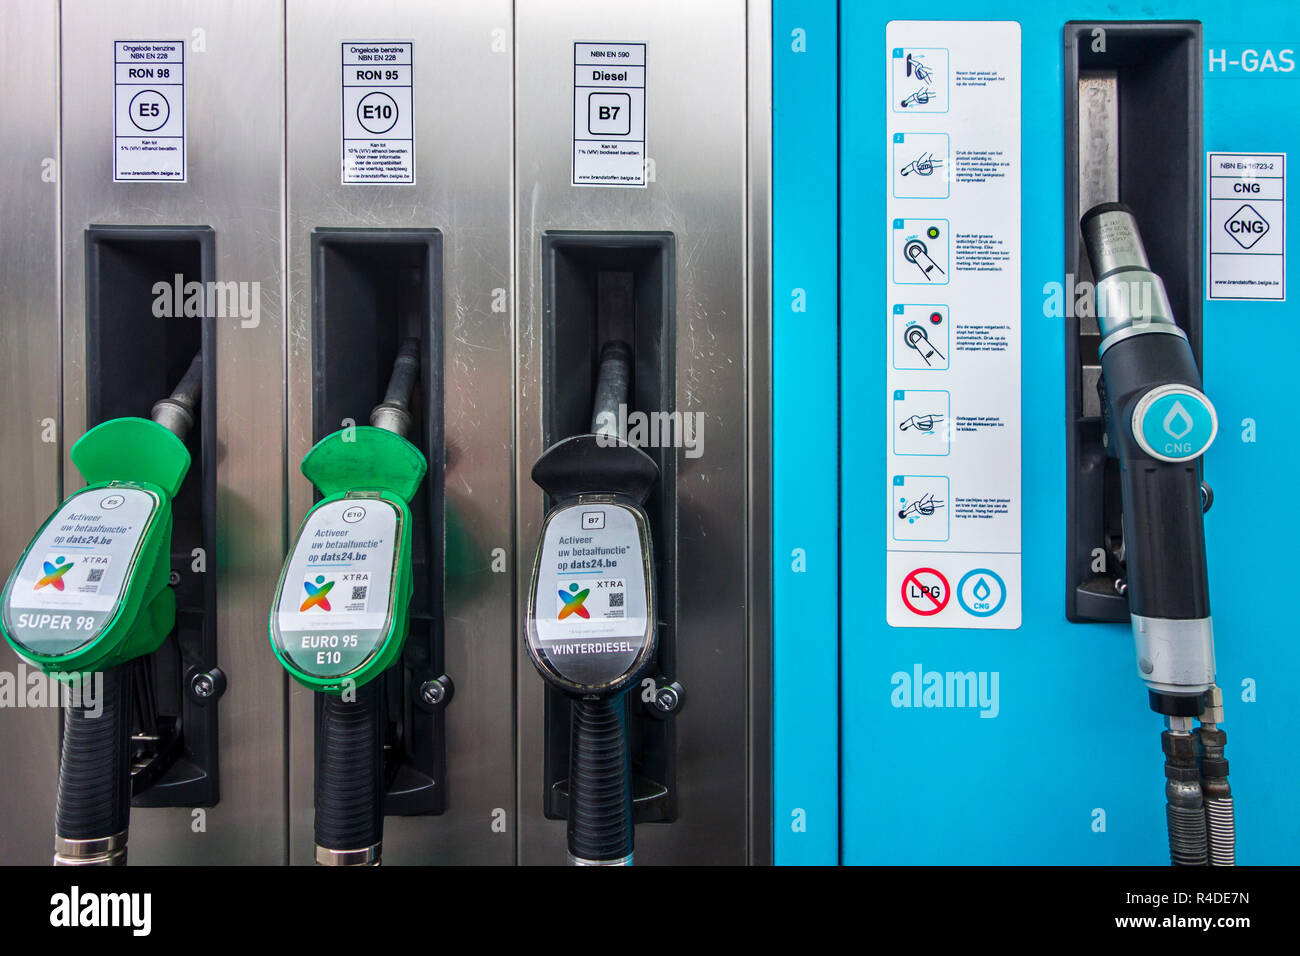 Un code de couleur et de becs de gaz combustible de l'UE nouvelles étiquettes d'identification de l'essence E5 / E10 et B7 diesel au poste d'essence en Belgique, Europe Banque D'Images